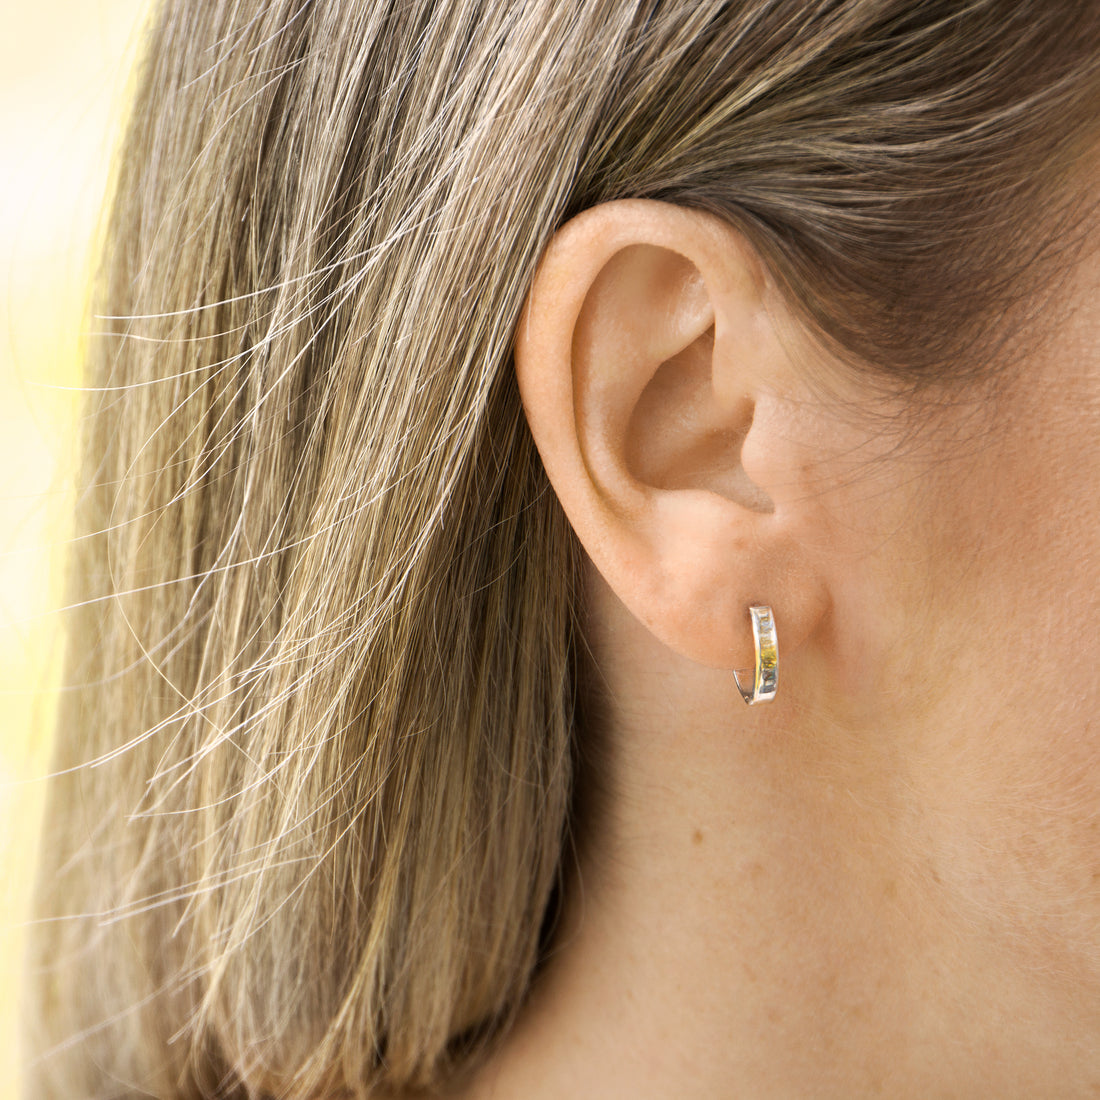 Gold hug earrings on ear- AïANA